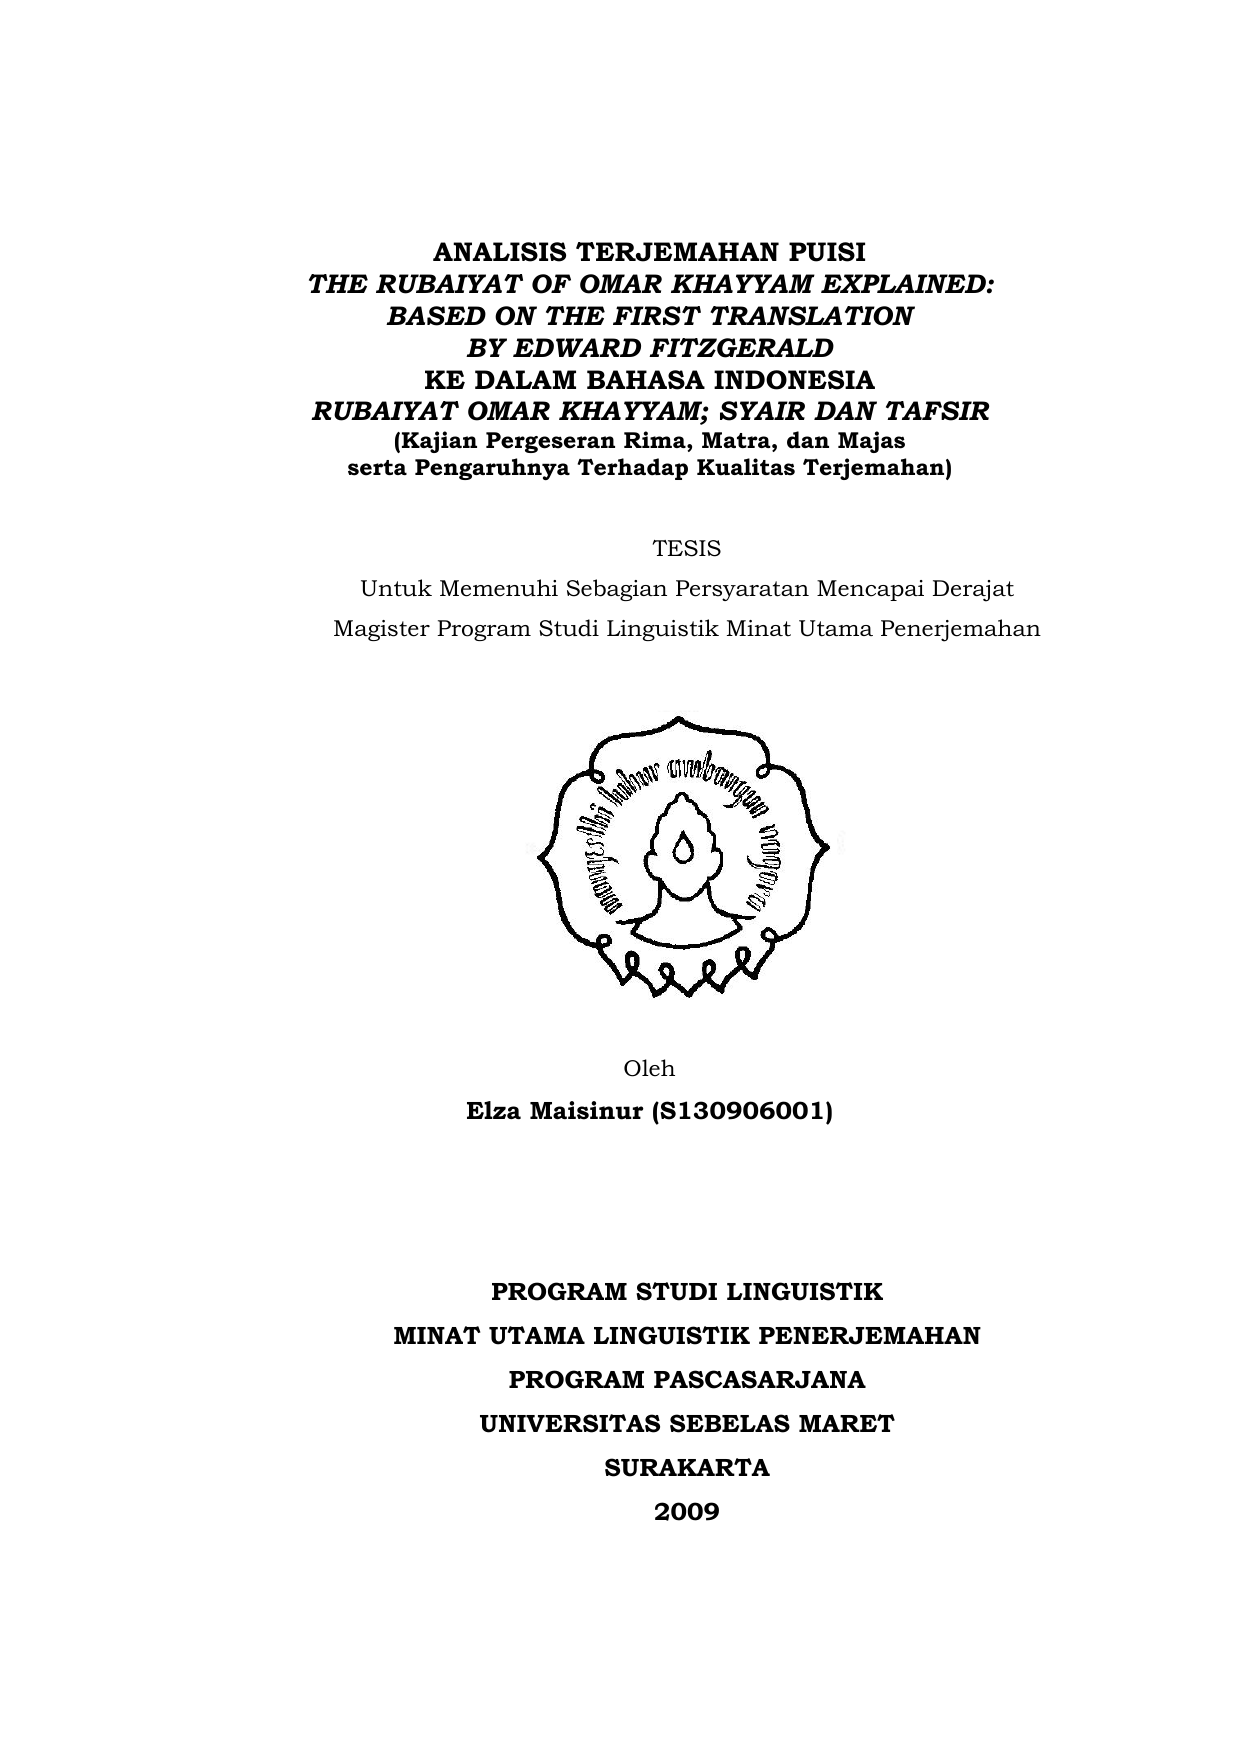 ANALISIS TERJEMAHAN PUISI THE RUBAIYAT OF OMAR KHAYYAM EXPLAINED BASED ON THE FIRST TRANSLATION BY EDWARD FITZGERALD KE DALAM BAHASA INDONESIA RUBAIYAT